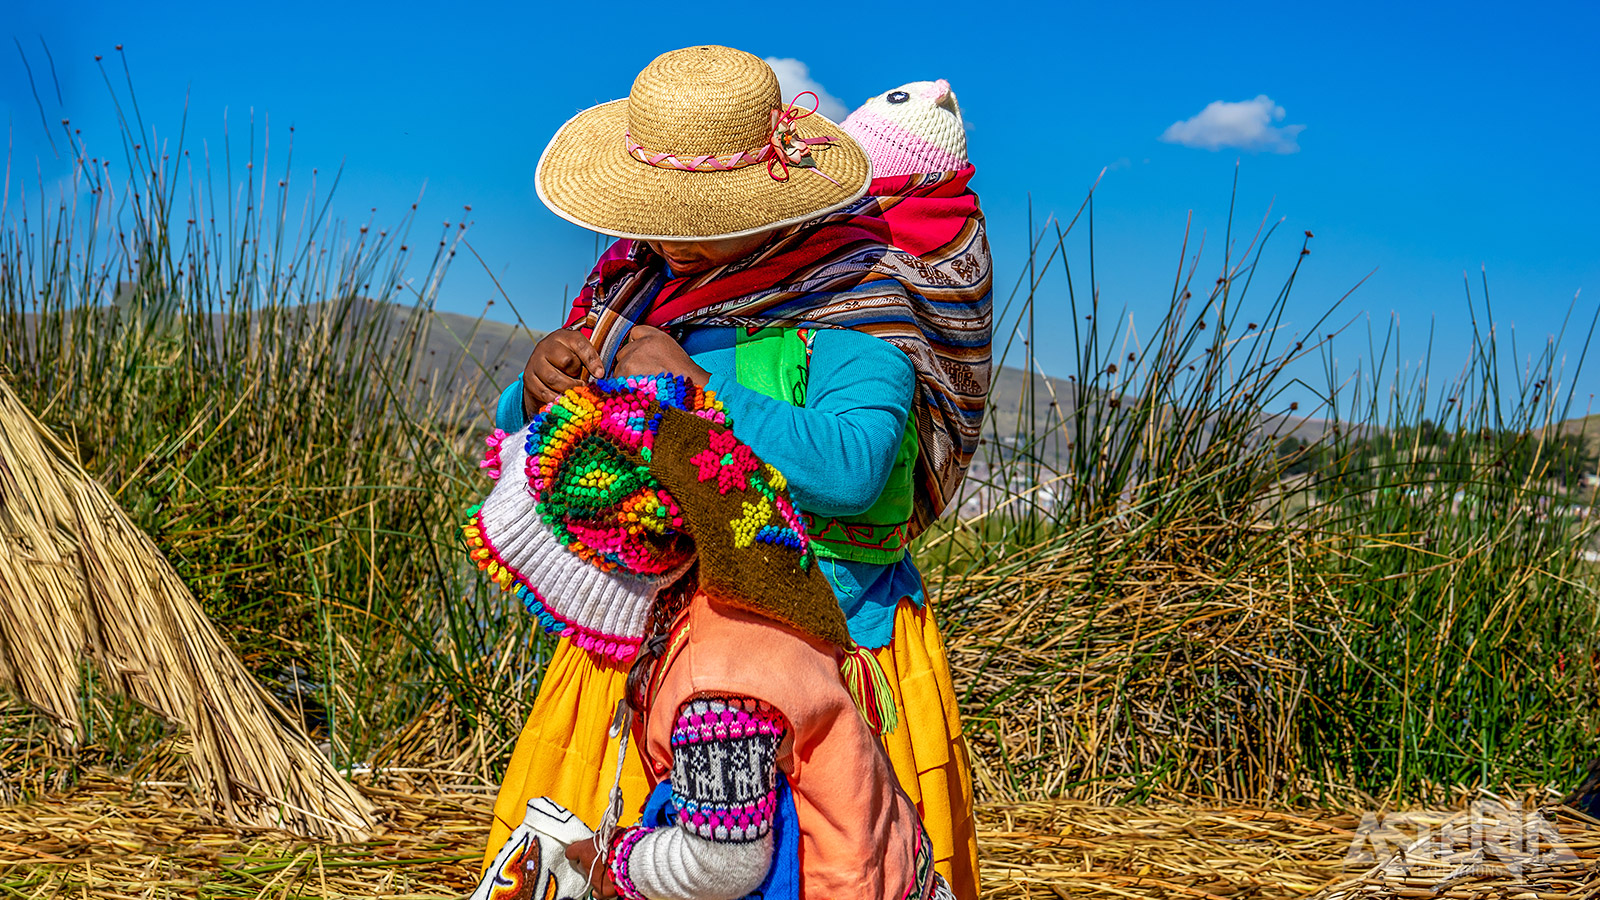 De Uros-indianen zijn afstammelingen van één van de oudste Zuid-Amerikaanse groepen